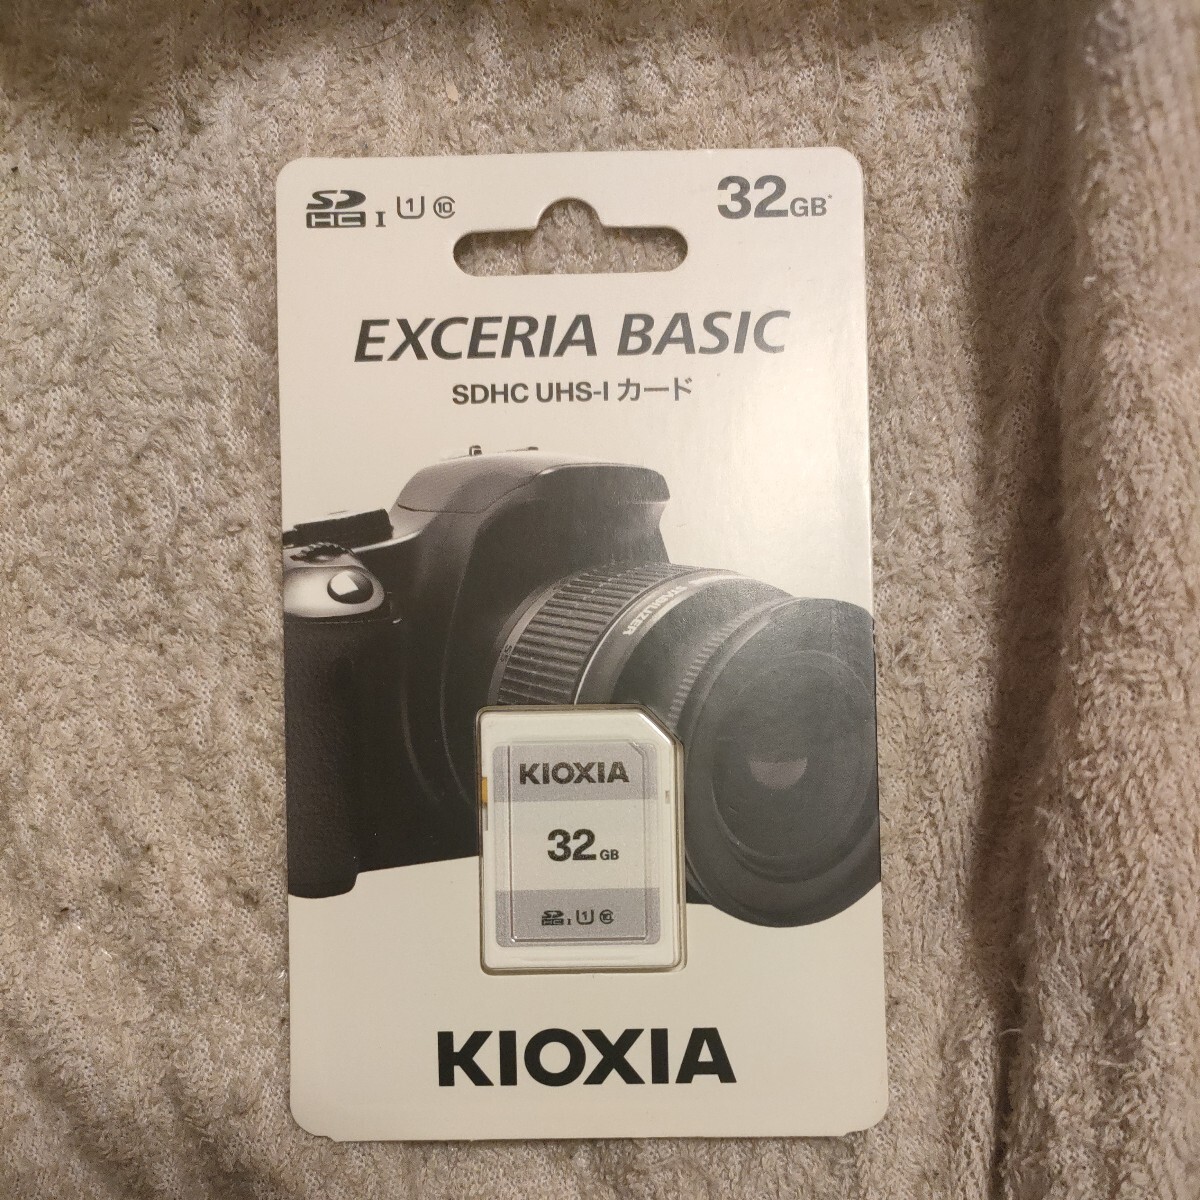 キオクシア KIOXIA EXCERIA BASIC KSDER45N032G （32GB）_画像1